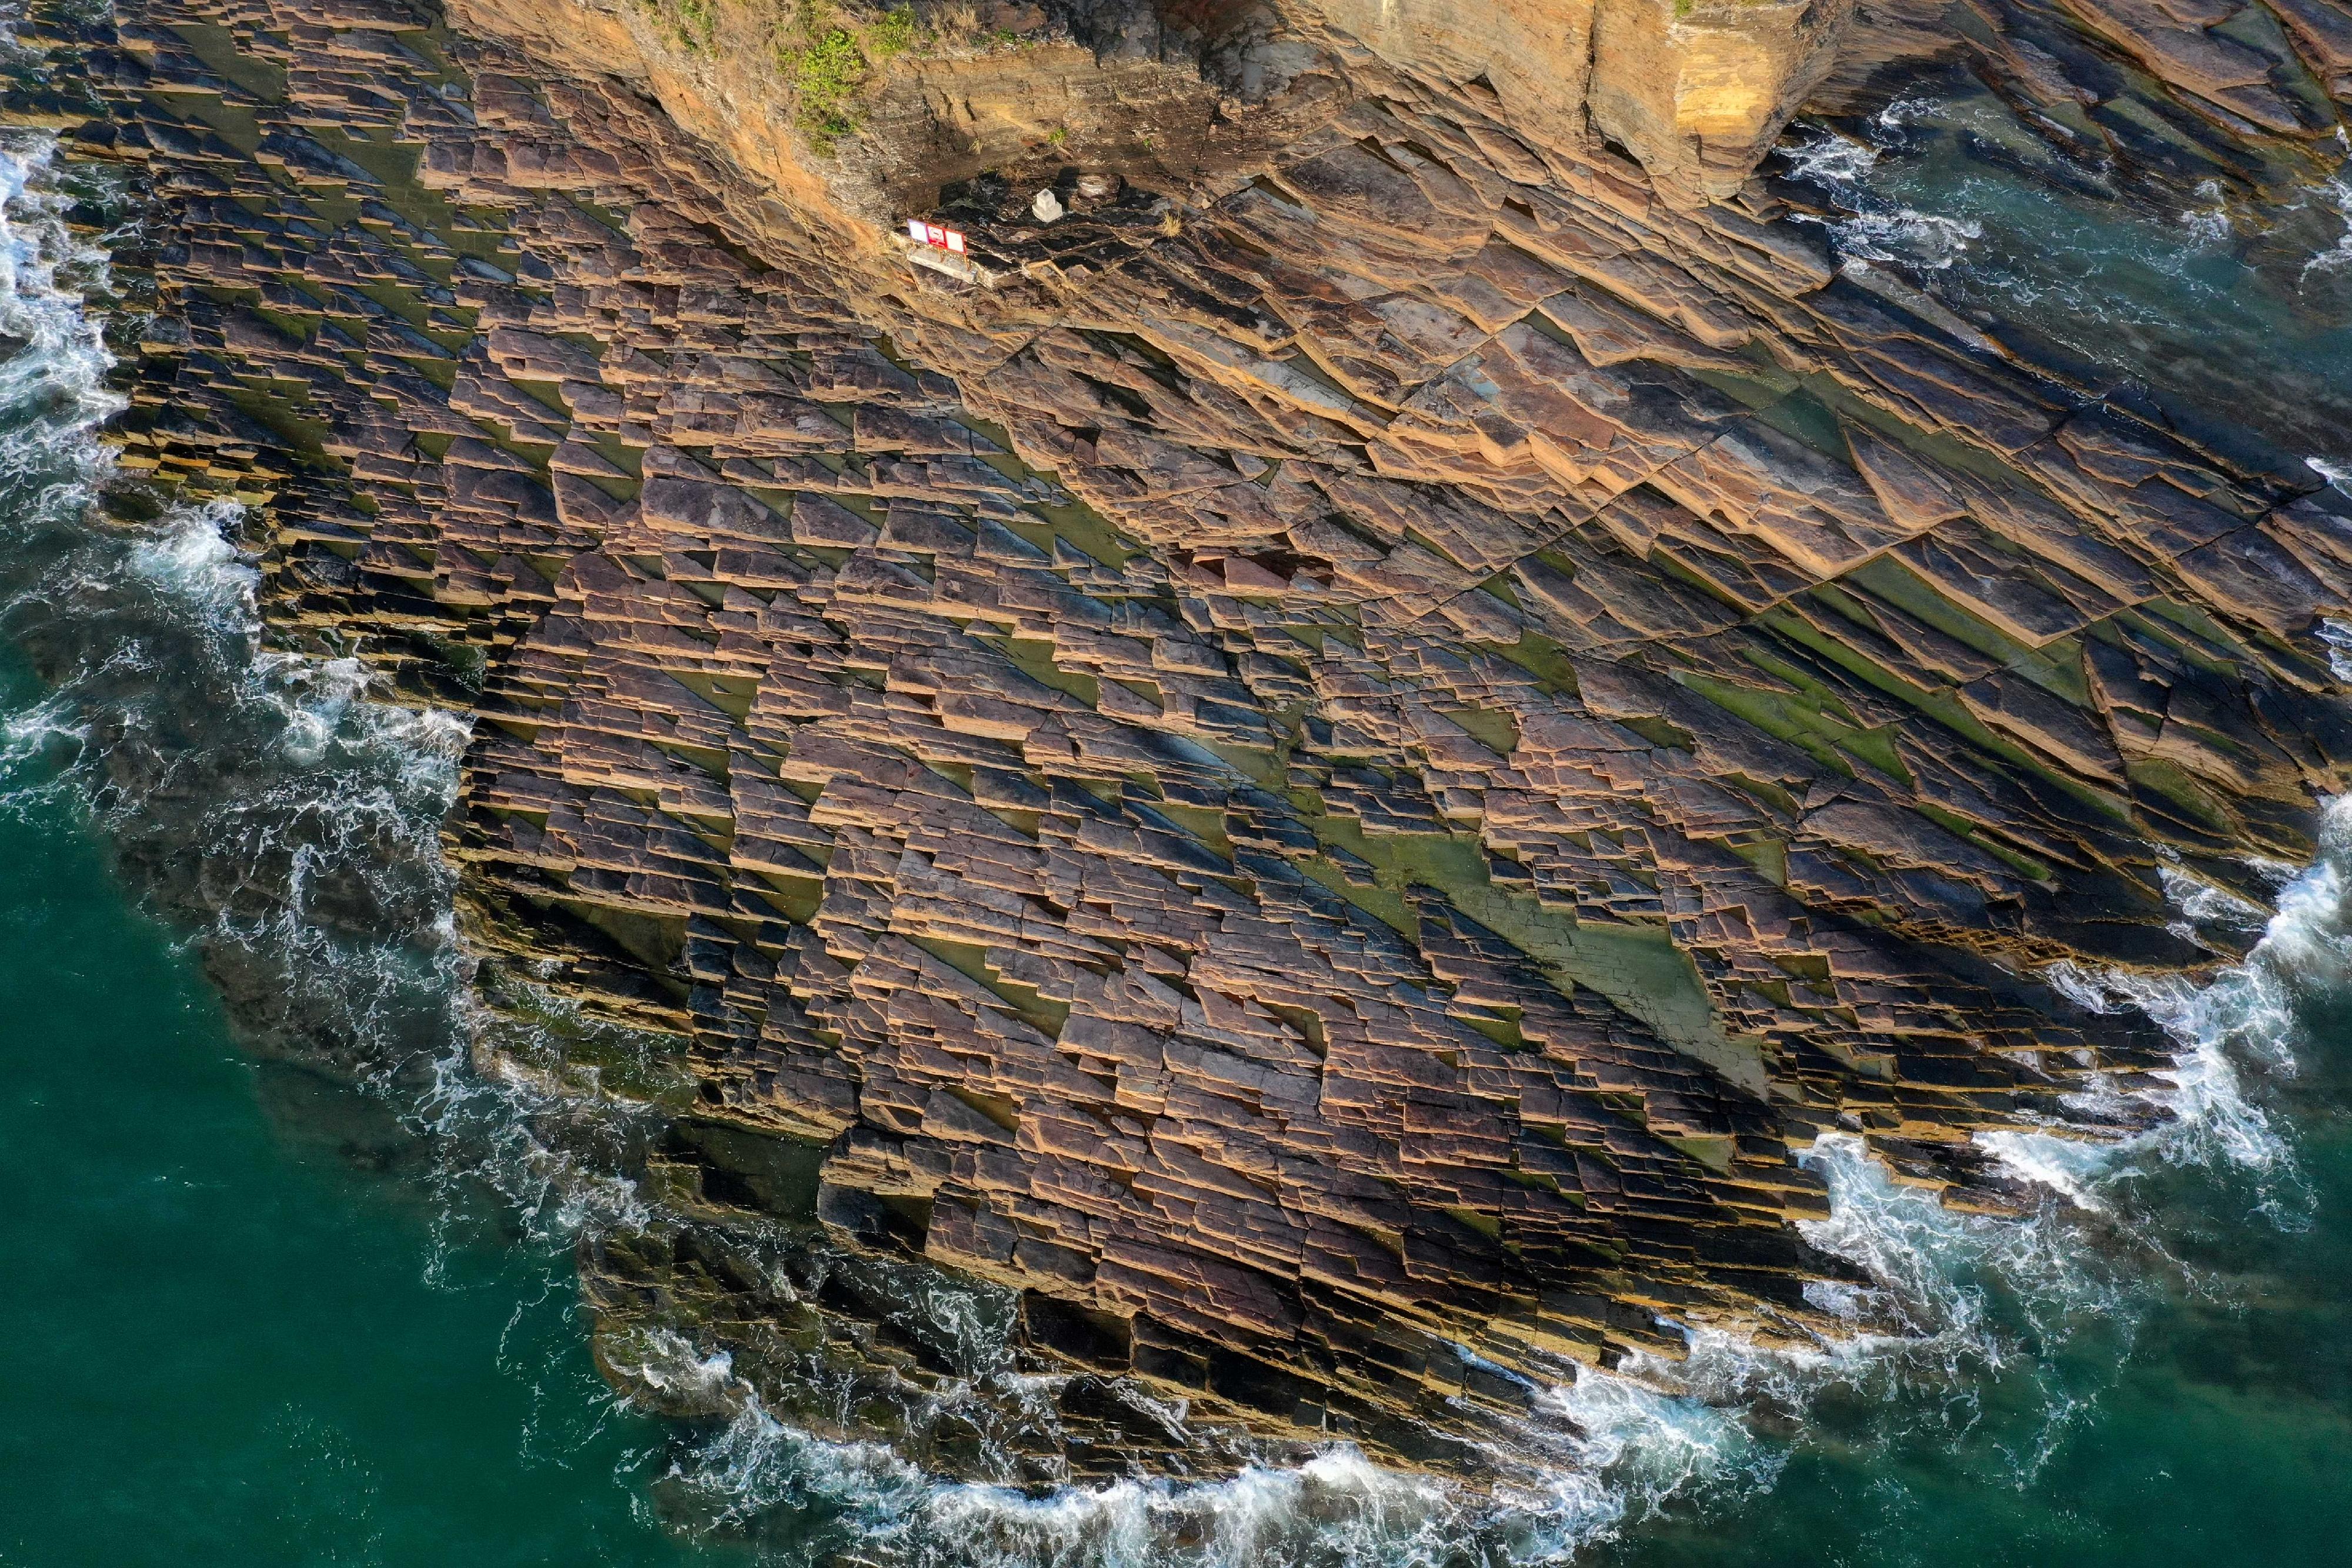 漁農自然護理署今日（九月一日）公布香港郊野公園攝影暨短片比賽結果。圖示由梁罡銓拍攝的風景攝影組亞軍作品「石鱗遍岸」。